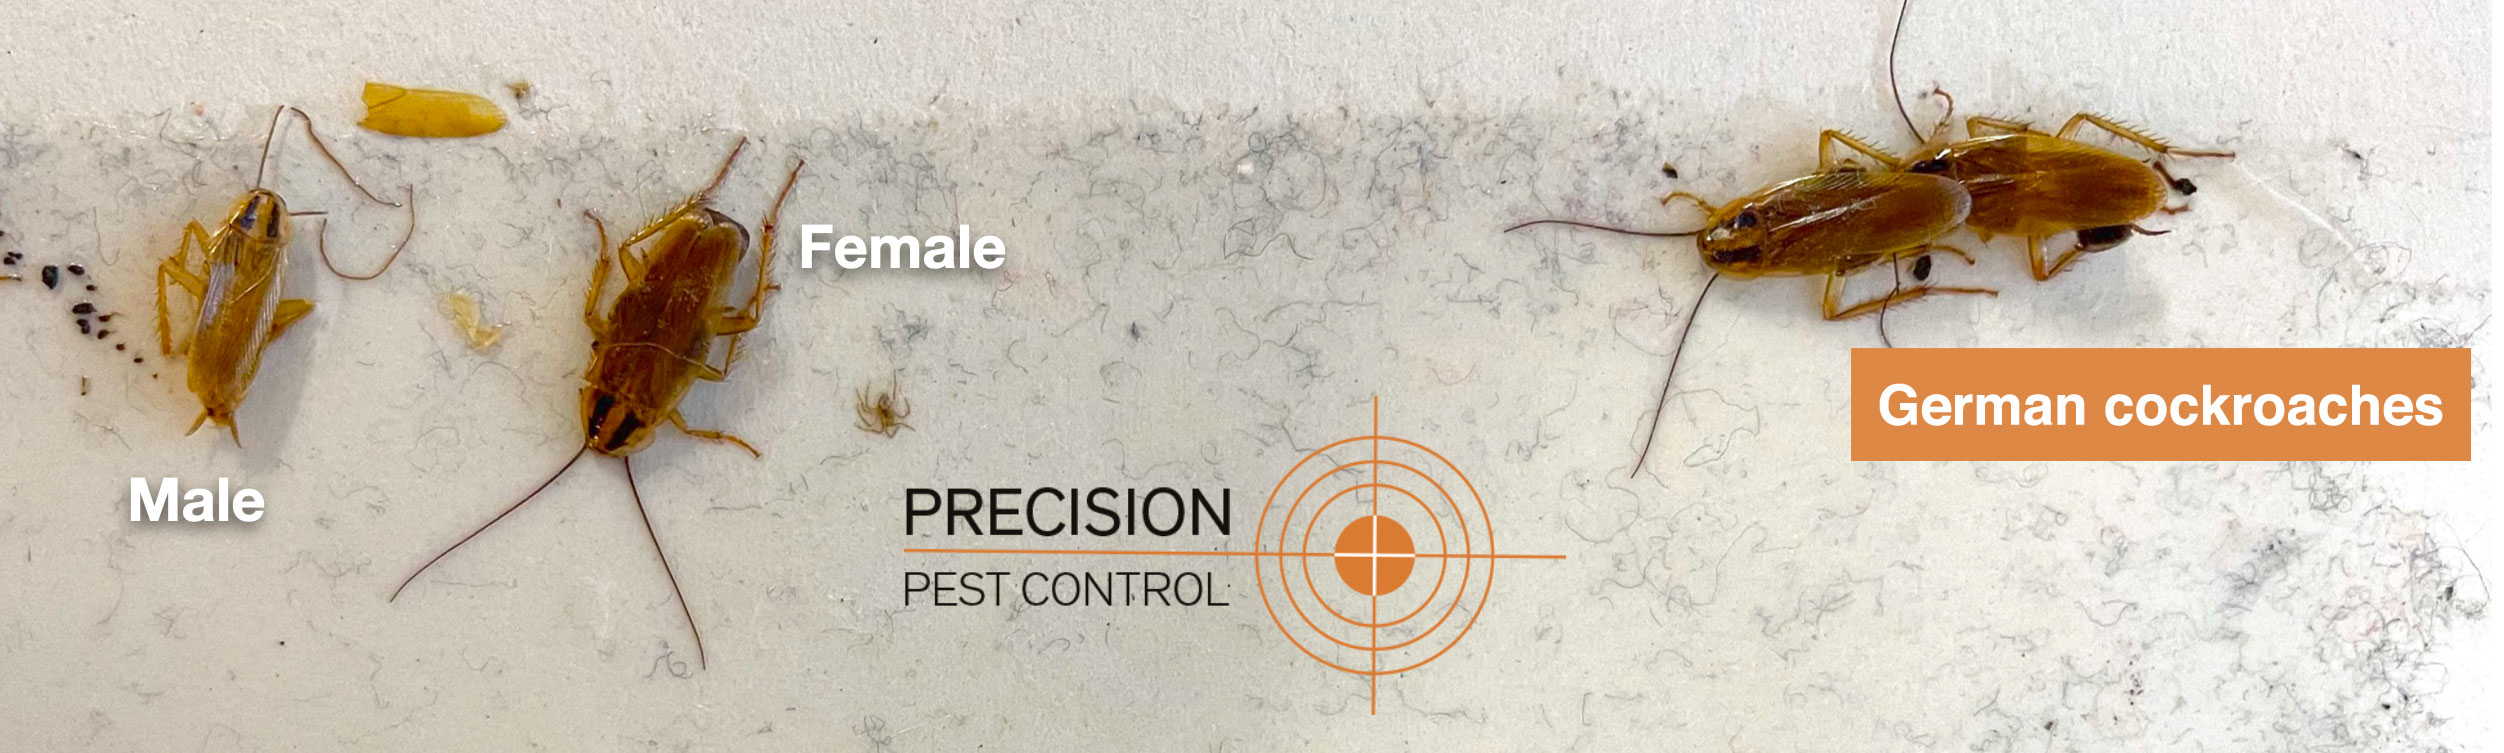 Precision Pest Control German cockroach